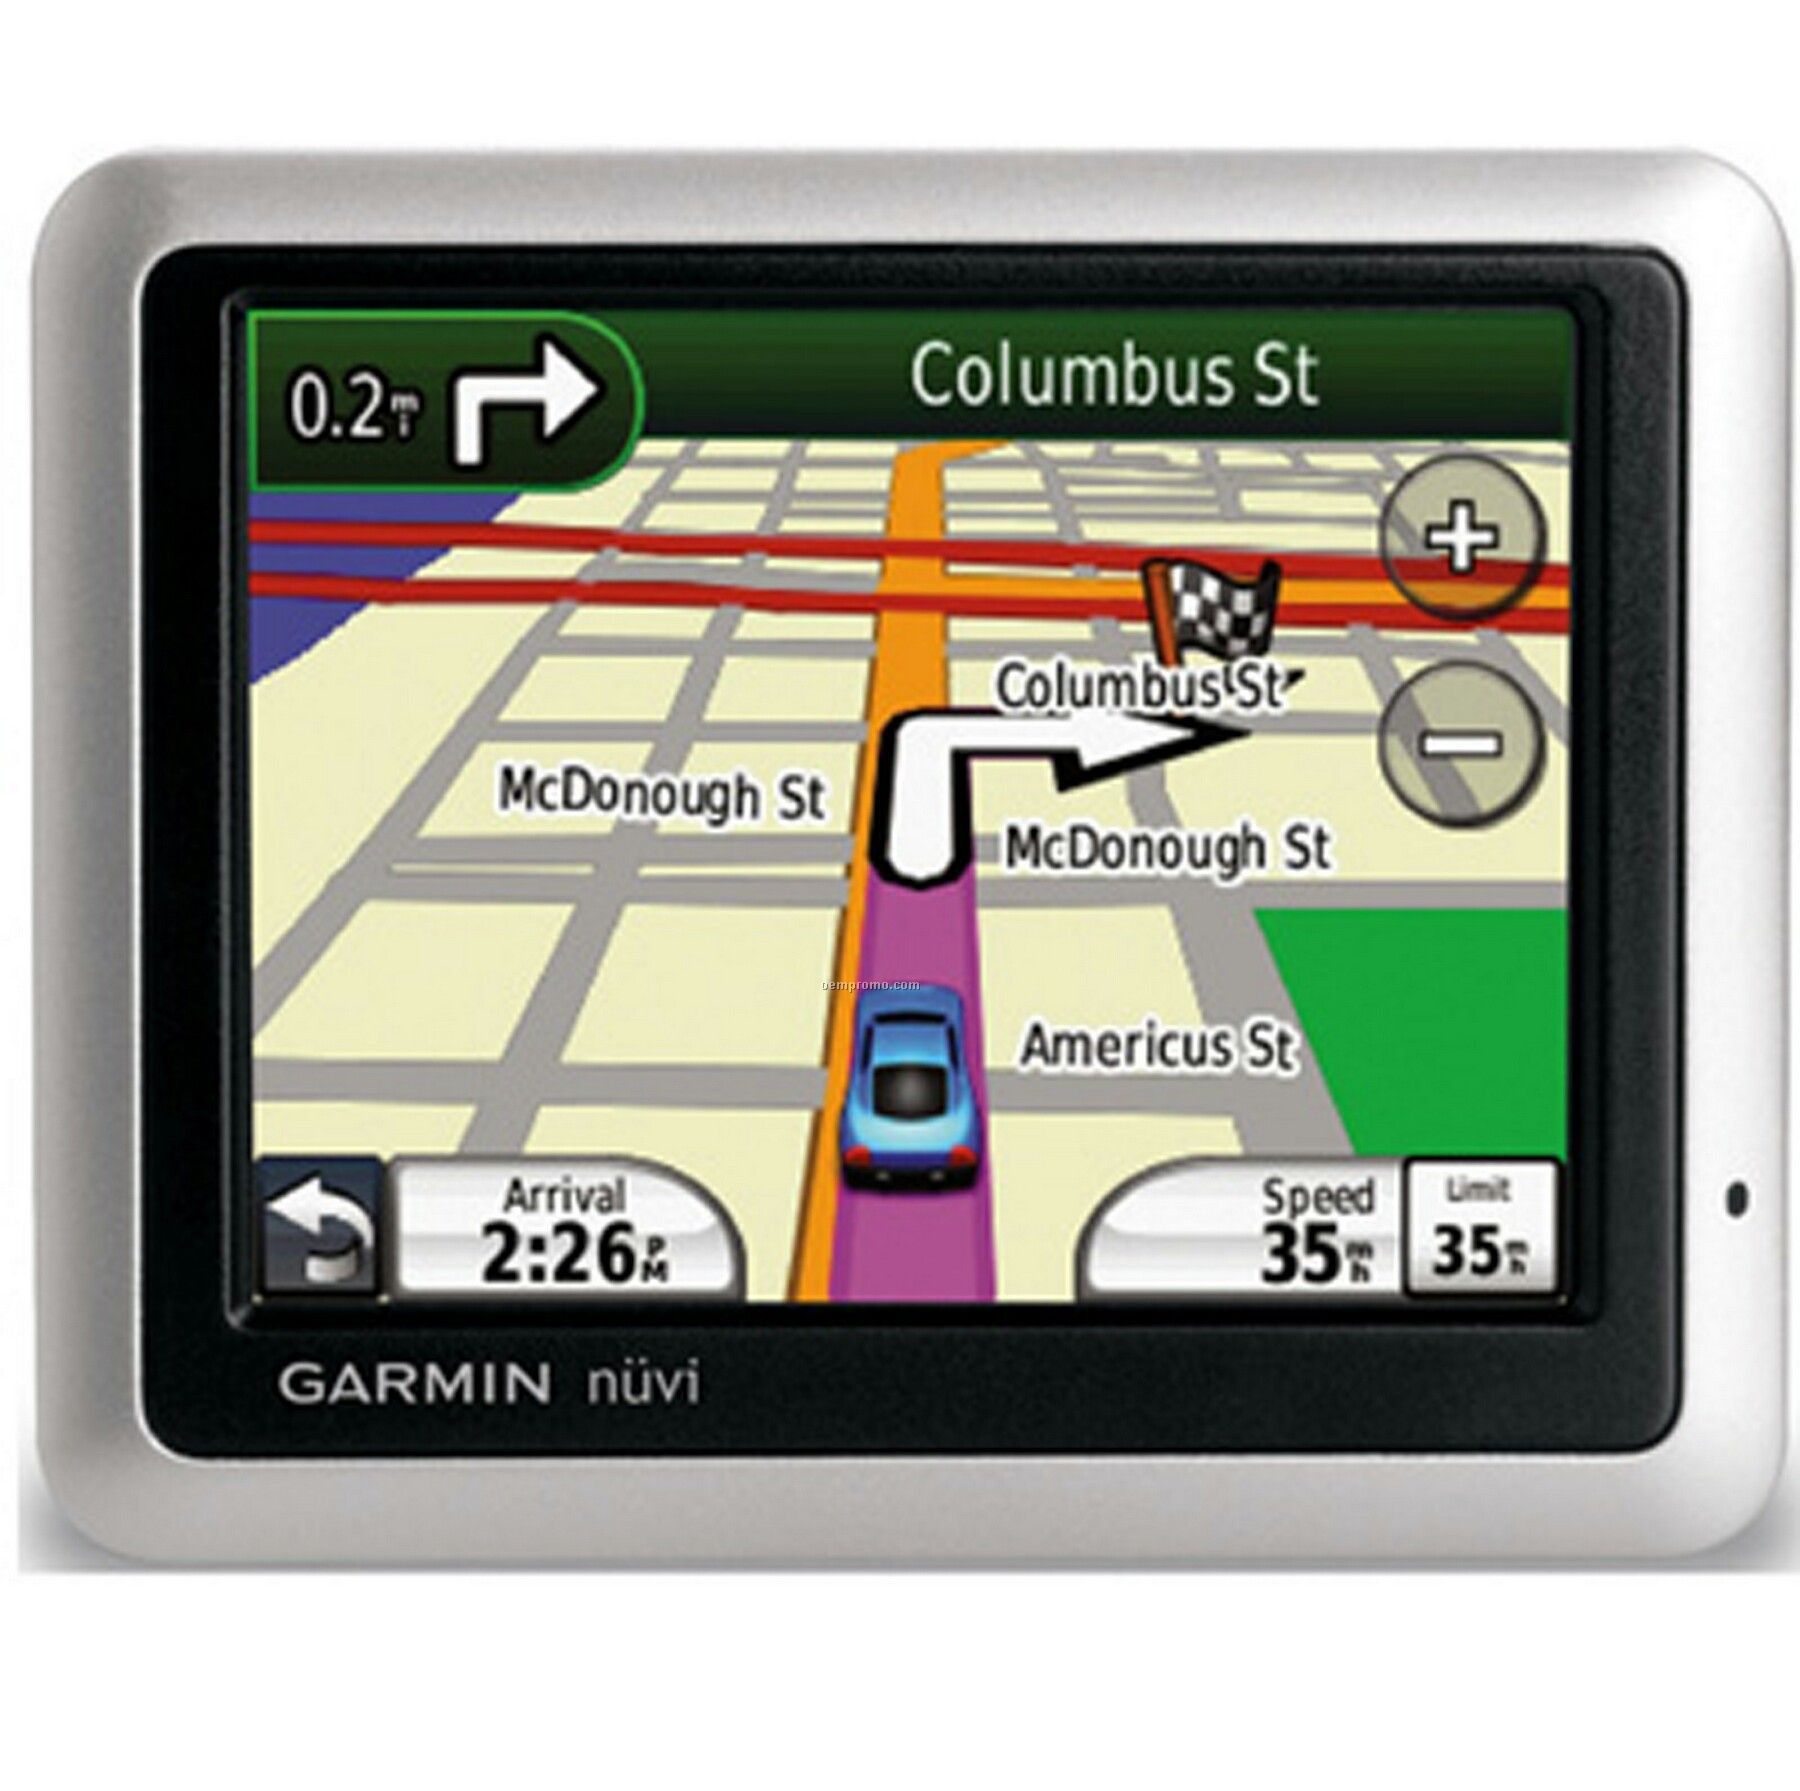 Garmin Nuvi 1250 Gps Vehicle Navigation System